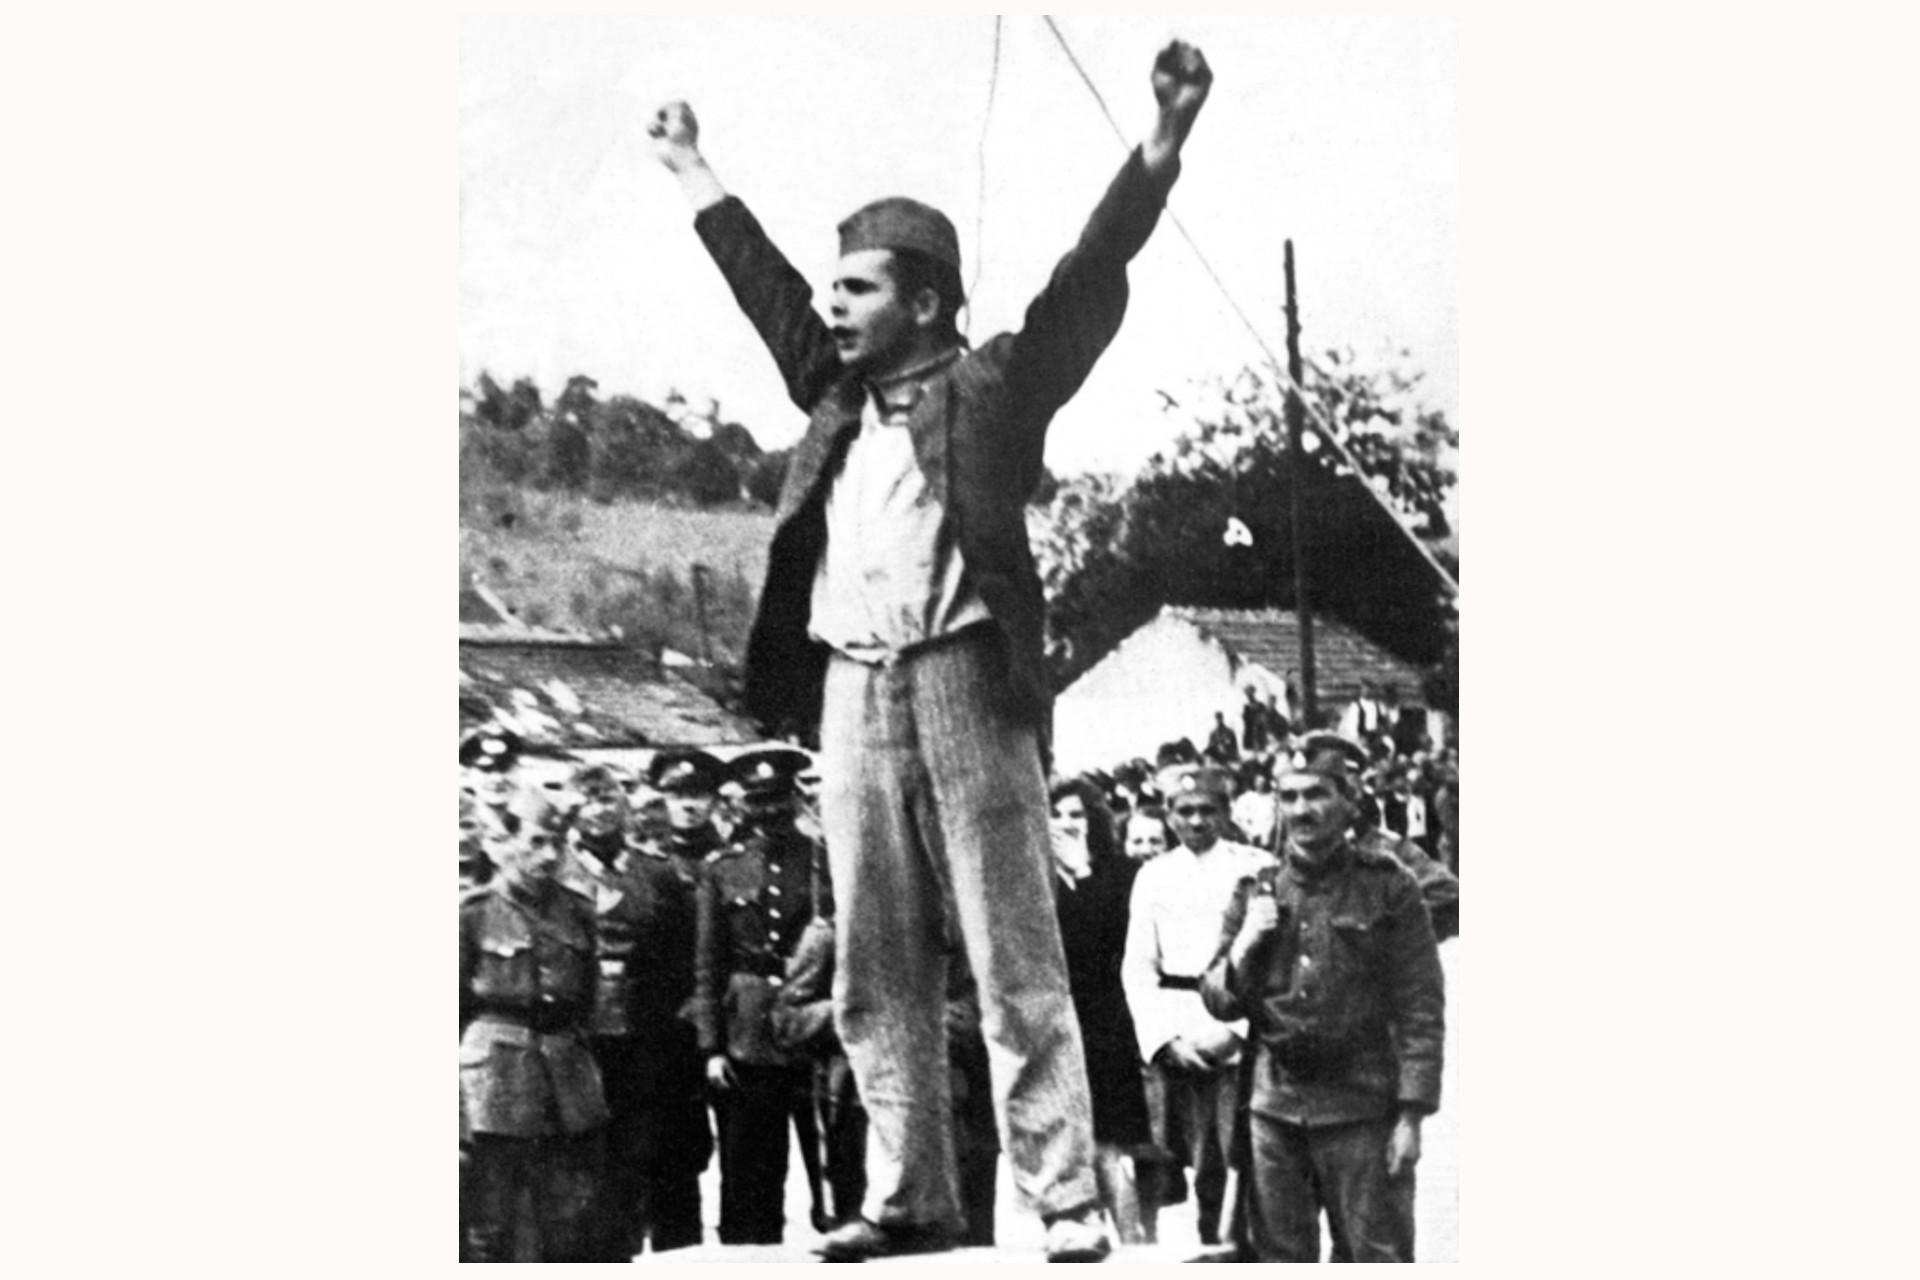 Der Nationalheld Stjepan Filipović kurz vor seiner Erhängung am 22. Mai 1942. Fotografiert von Slobodanka Vasić. (Mit freundlicher Genehmigung von Valjevo.znaci.net). Dieses Foto von Stjepan Filipović – oder Stevan Kolubarac, wie er in Serbien genannt wurde – war eines der Partisanenfotos, die außerhalb der Grenzen Jugoslawiens am weitesten verbreiteten wurden. Filipović war vor dem Krieg Gewerkschafter gewesen und schloss sich zu Beginn des Volksaufstandes den Partisanen an, zunächst als stellvertretender Kommandant der Kolubara-Kompanie und dann als politischer Kommissar des Macvan-Kommandos. Nach seiner Gefangennahme übergaben ihn die serbisch-nationalistischen Tschetniks den deutschen Truppen, die ihn als Warnung an andere Widerstandskämpfer öffentlich im Zentrum von Valjevo erhängten. Dieses Foto des 26-jährigen Filipović unter dem Galgen mit einer Schlinge um den Hals und erhobenen Armen wurde nur wenige Minuten vor seiner Hinrichtung aufgenommen. Als er auf dem zentralen Platz der Stadt vor etwa 3.000 Menschen stand, gab er sich nicht gedemütigt, sondern wiederständig. Er wandte sich mit folgenden Worten an die Menge: »Schaut nicht nur zu, schlagt die Bastarde. Zieht eure rostigen Gewehre. Wenn ihr nur zuschaut, werden uns die Bastarde einen nach dem anderen töten.«